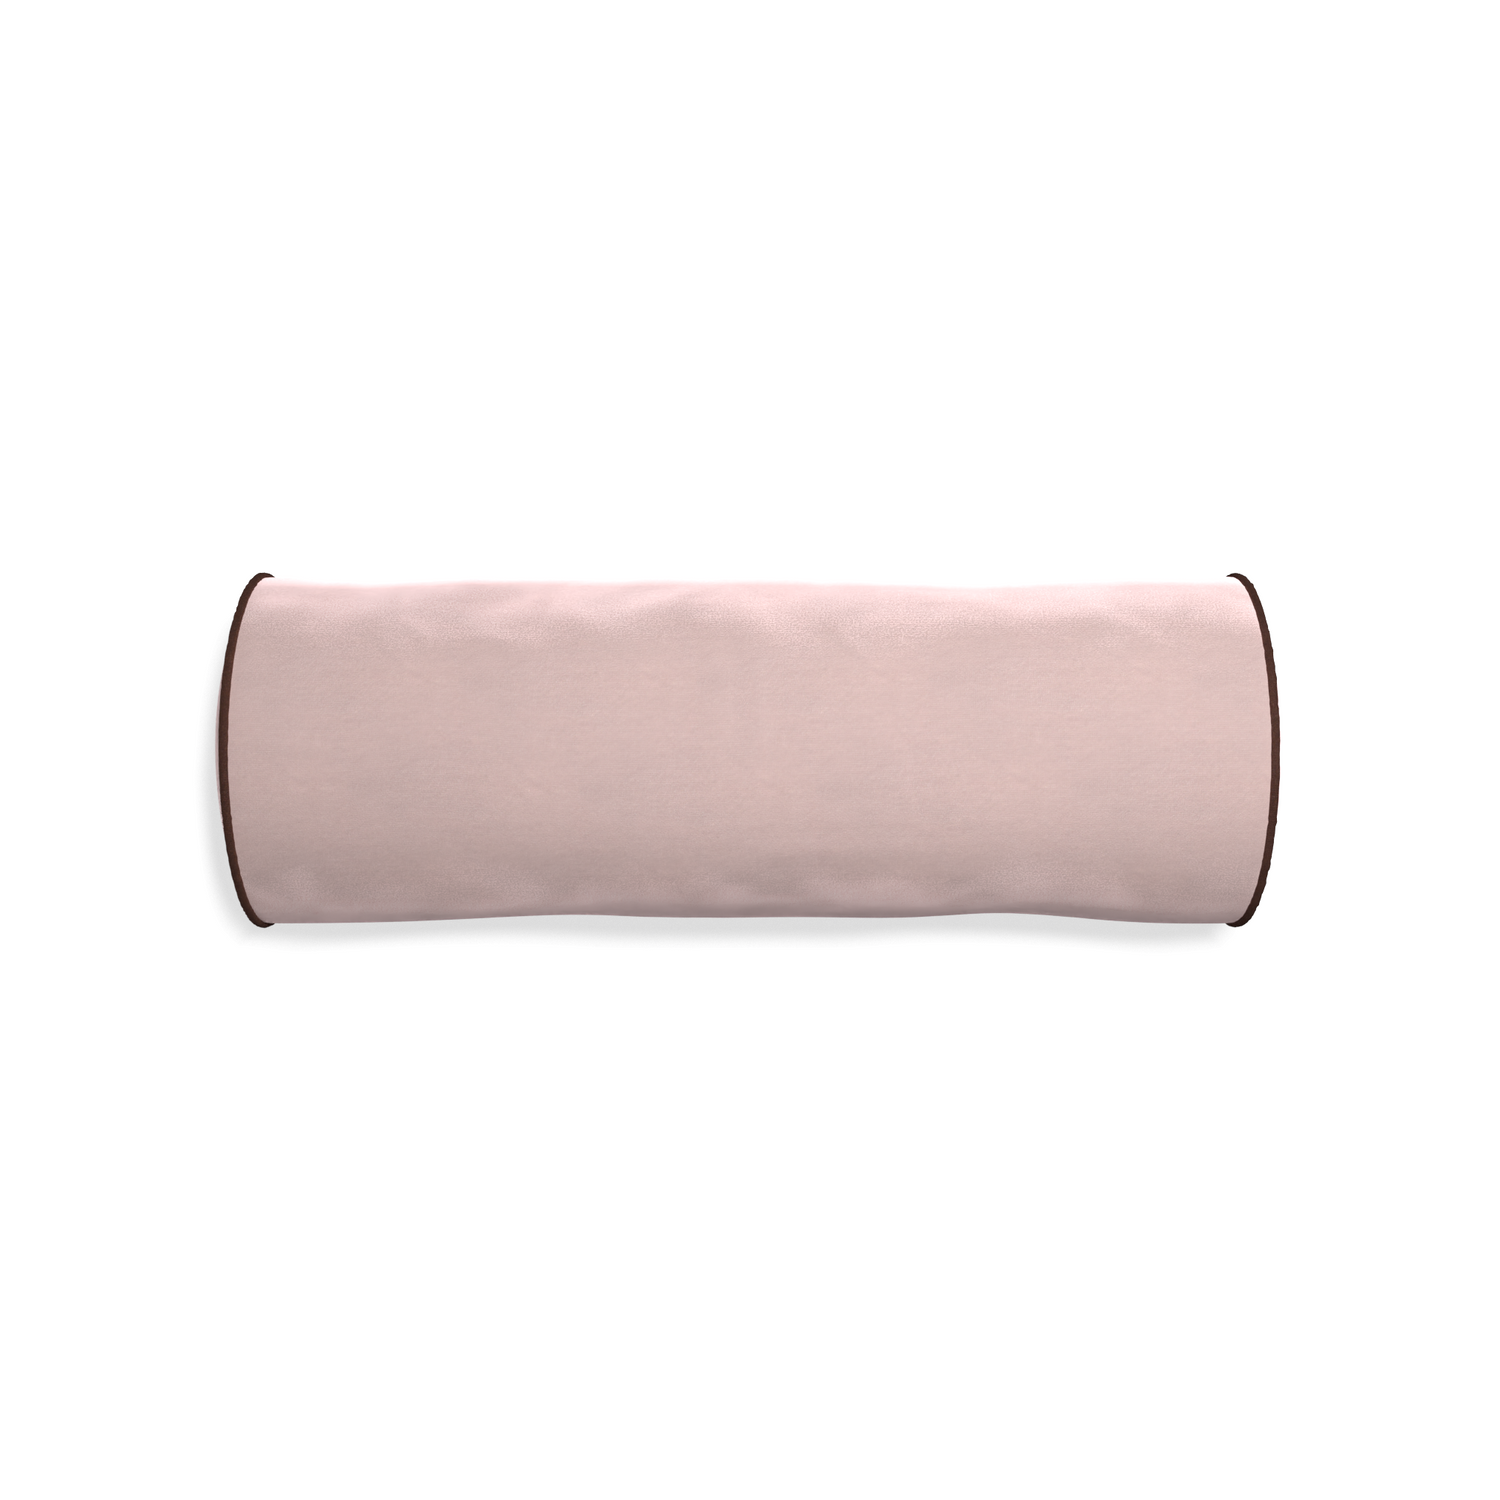 Bolster rose velvet custom pillow with w piping on white background